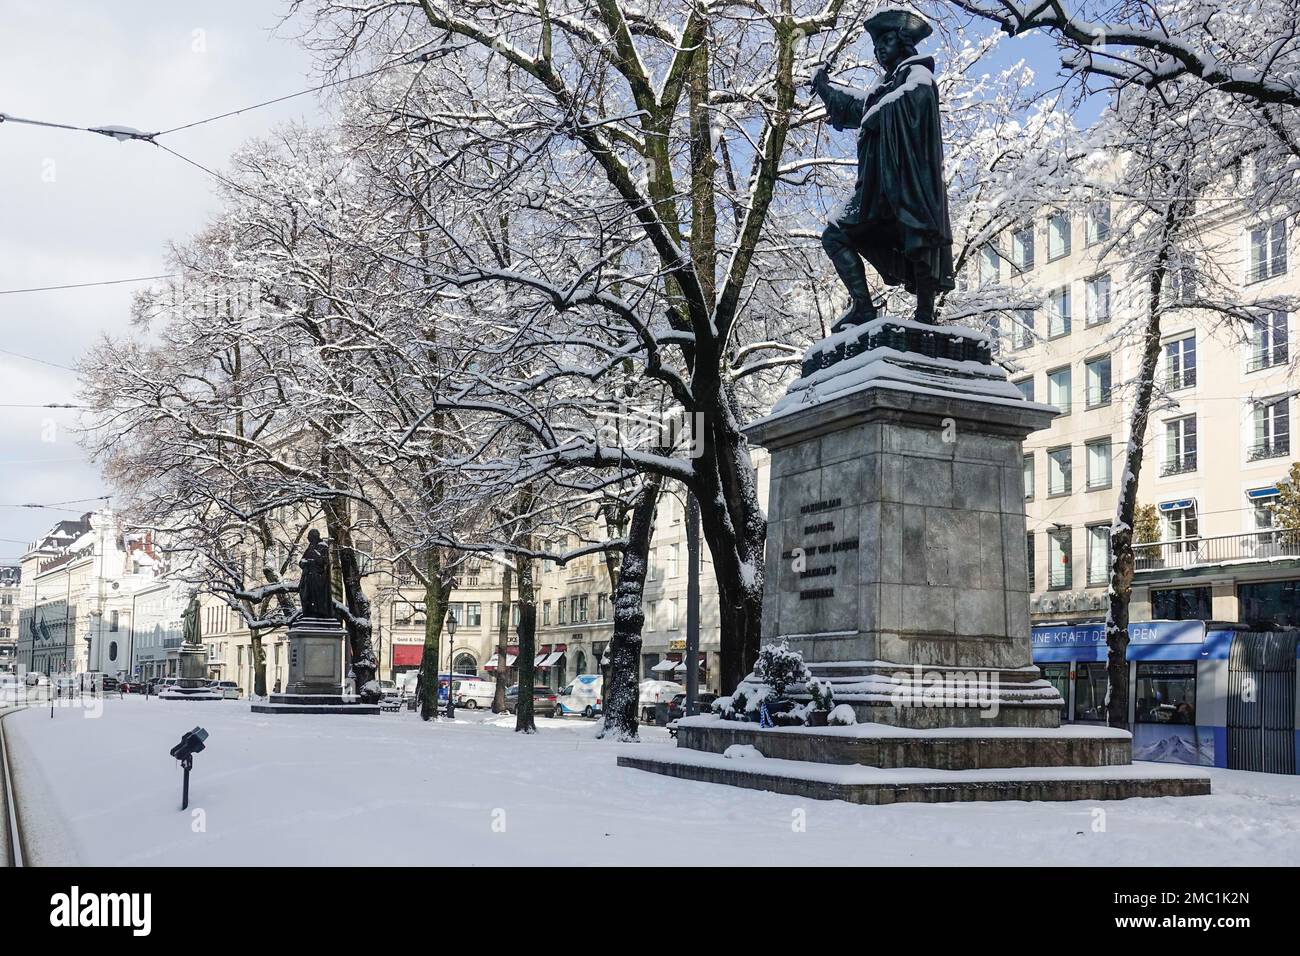 Plaza del paseo con monumento a Maximiliano Emanuel Elector de Baviera, cubierto de nieve en invierno, Munich, Baviera, Alta Baviera, Alemania Foto de stock